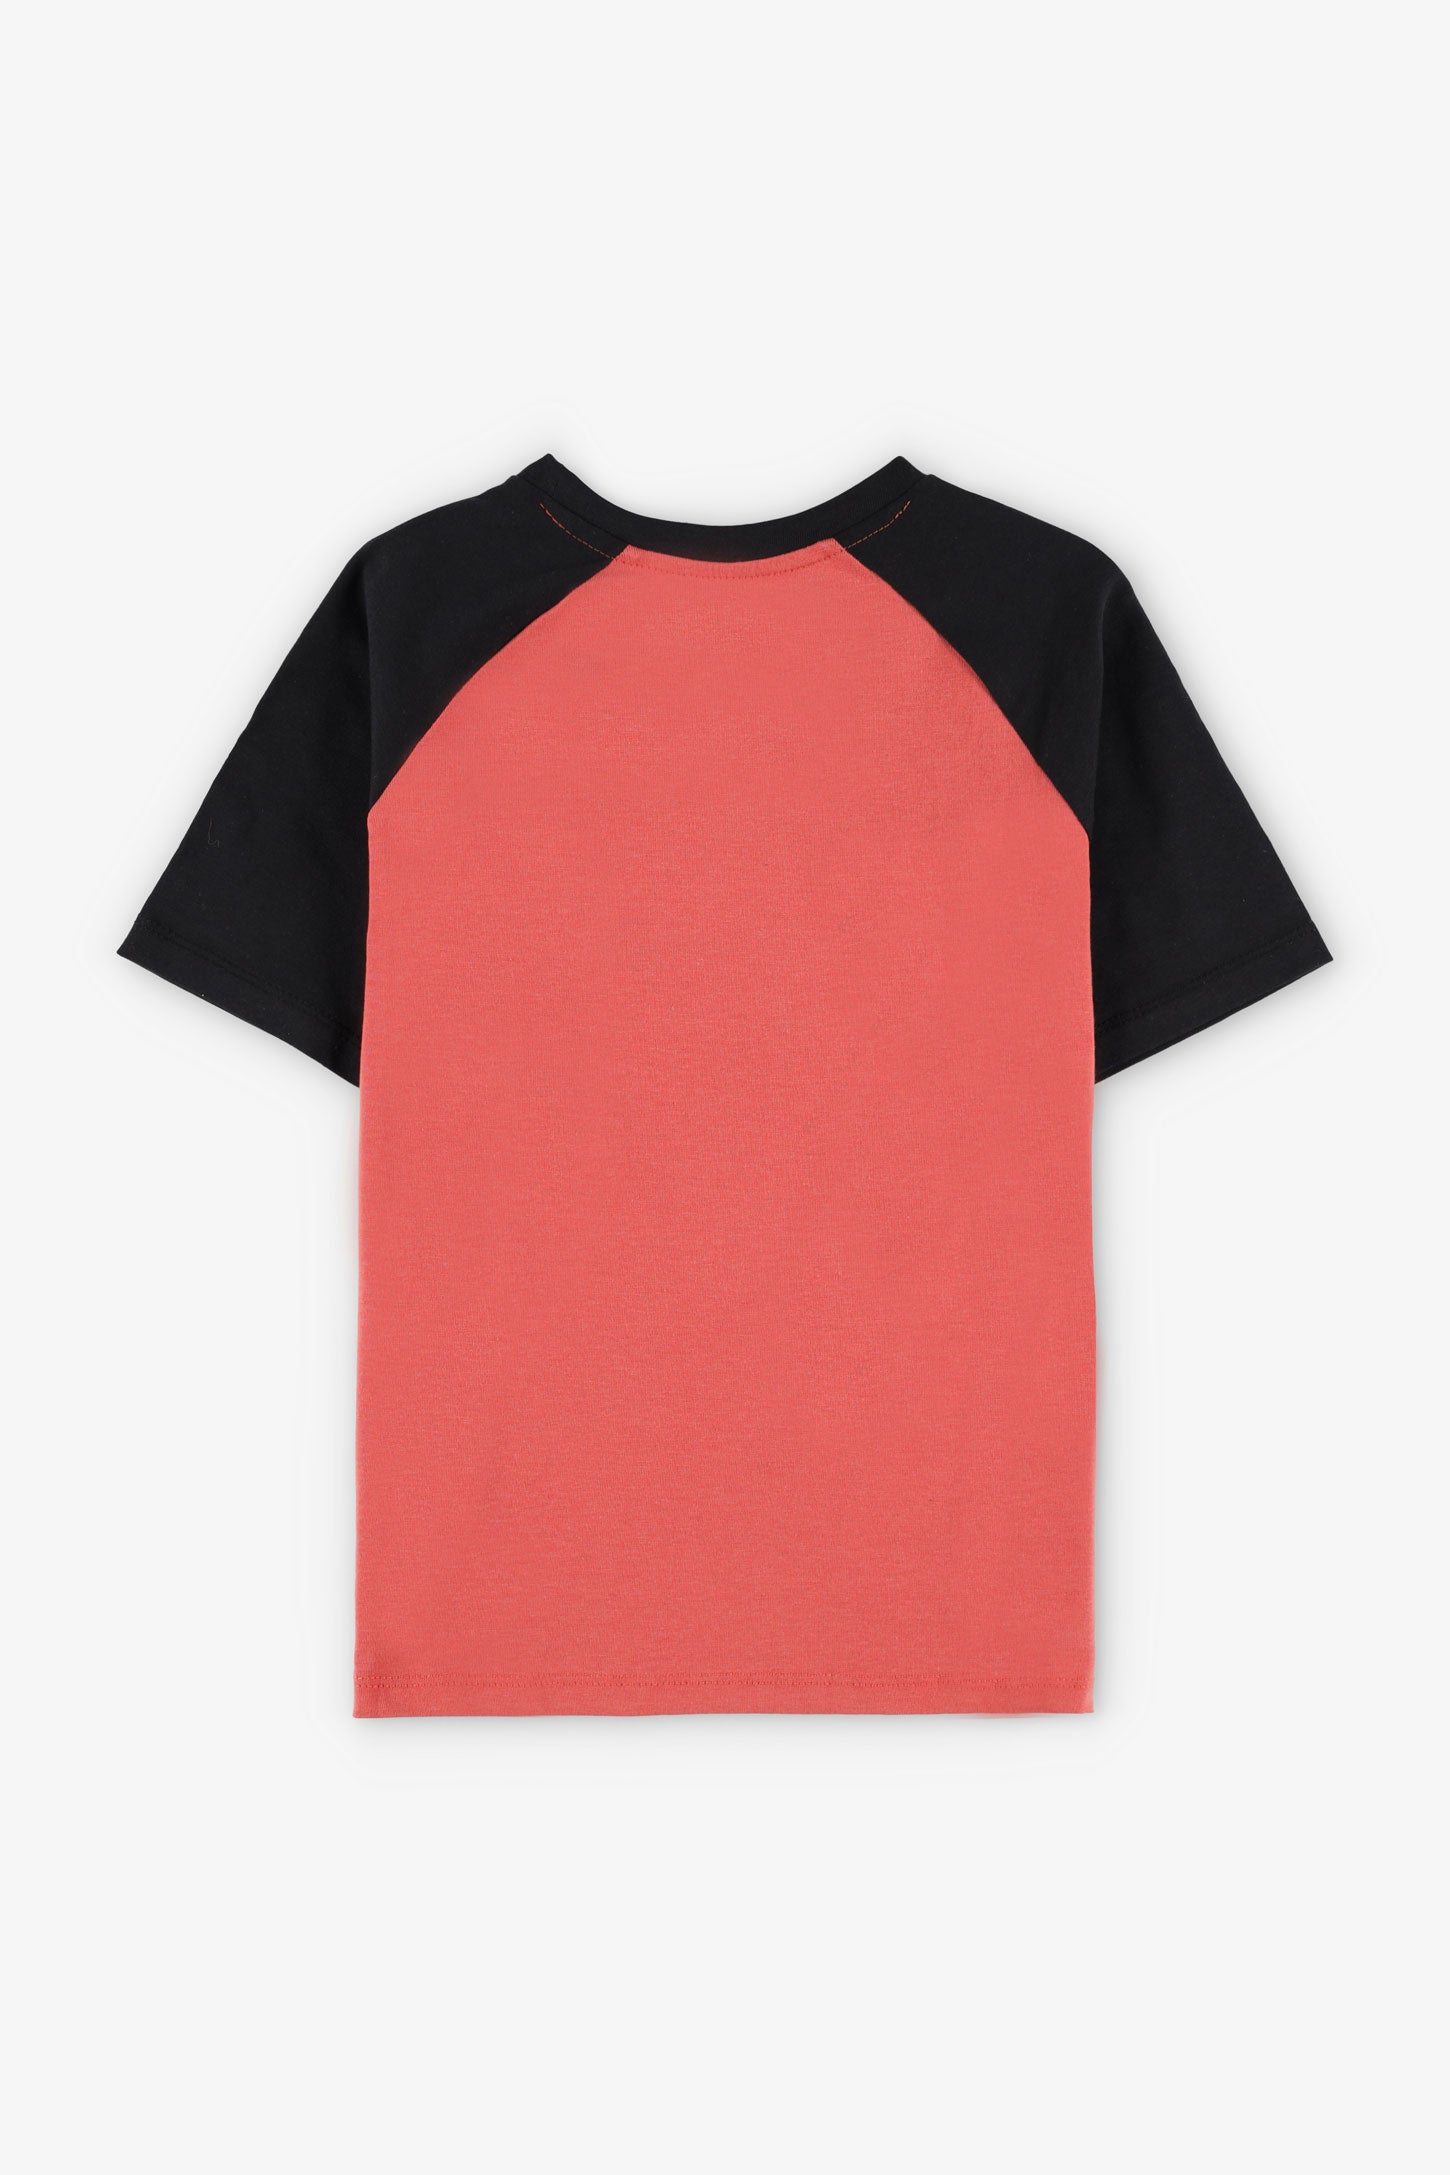 T-shirt col rond imprimé en coton, 2/20$ - Enfant garçon && ROUGE